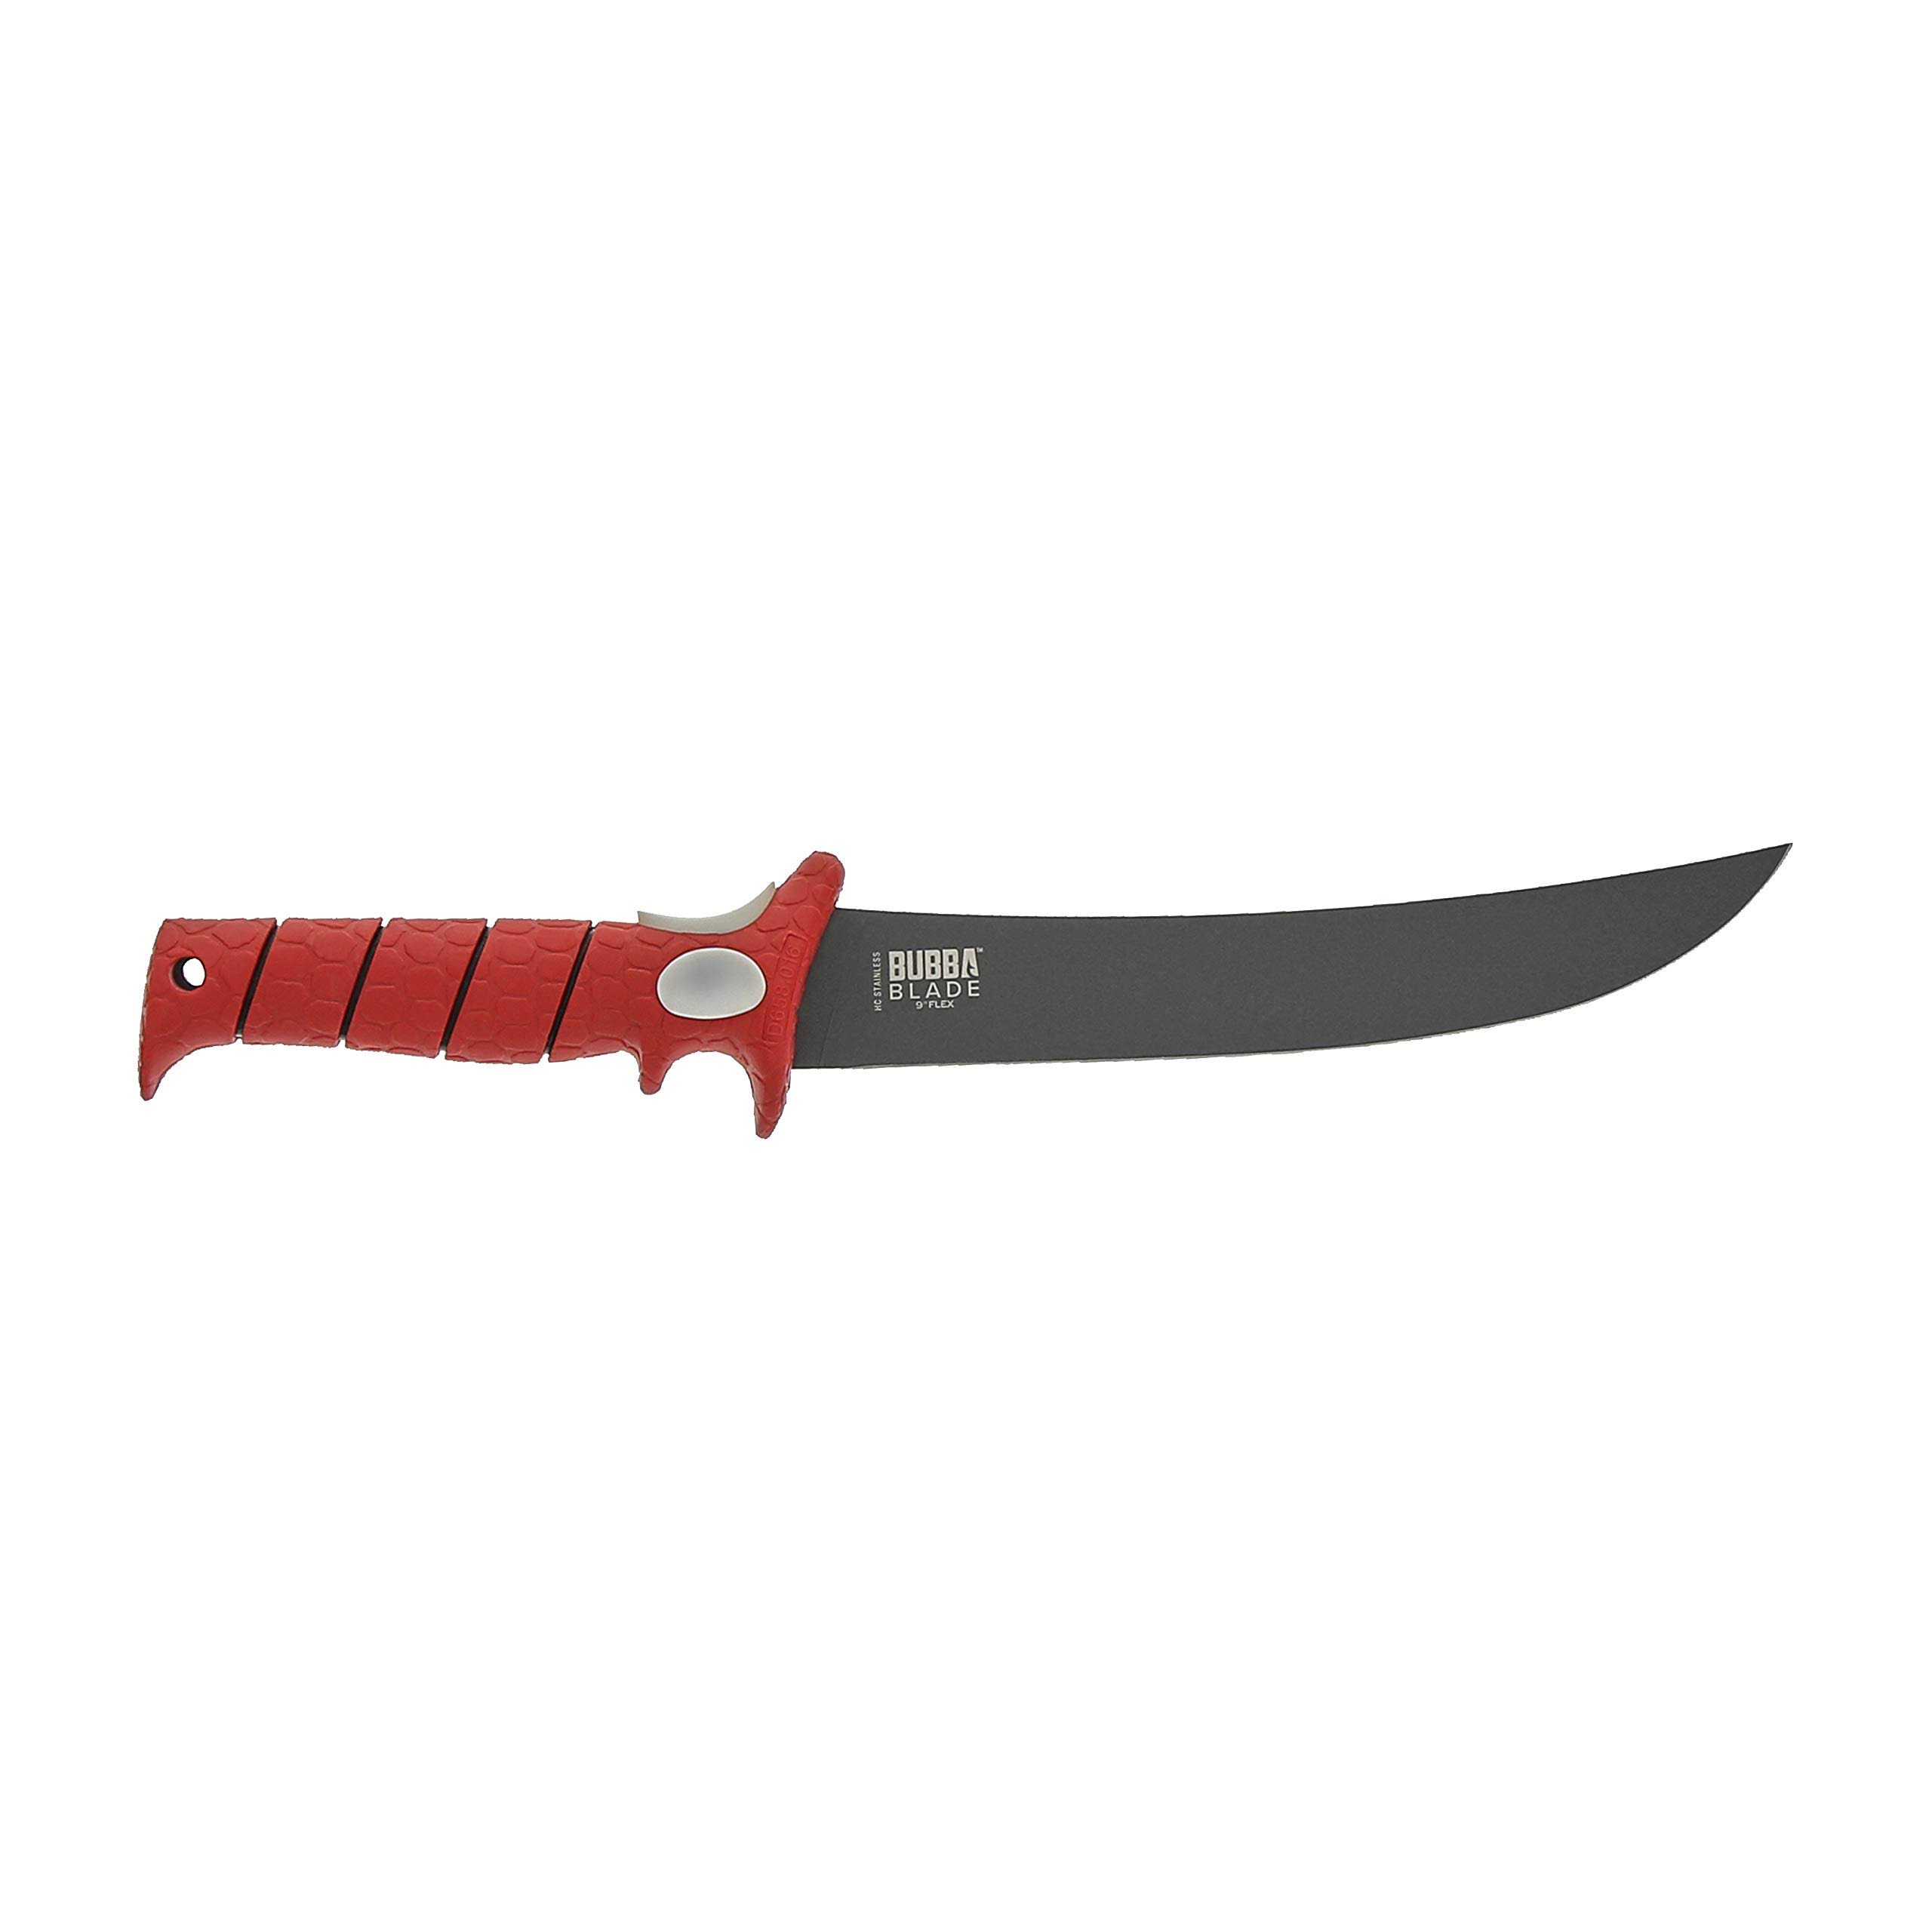 Bubba Blade Flex Blade Fillet Knife - Black/Red, 9"